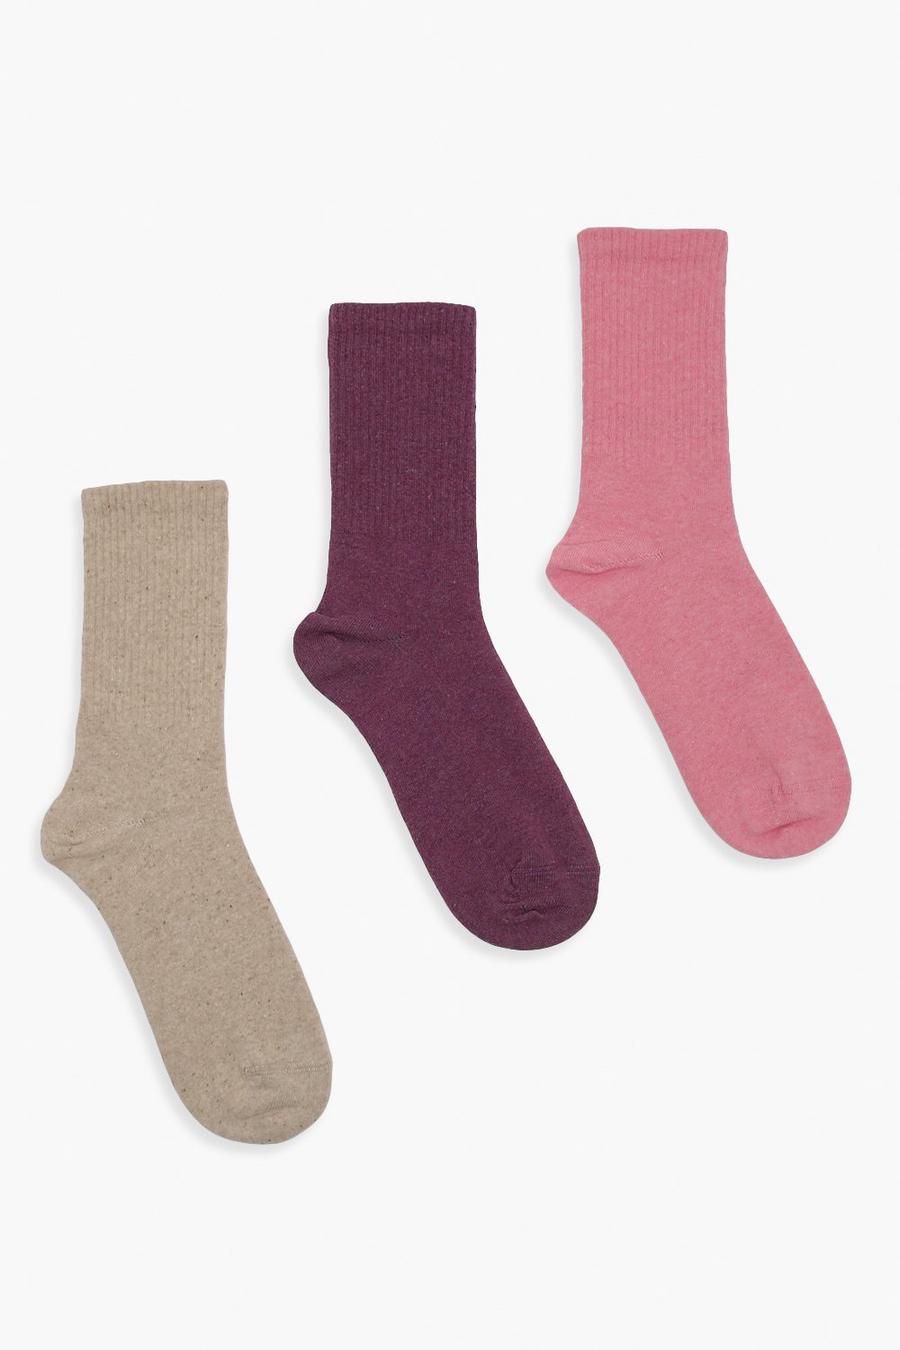 מולטי multi מארז 3 זוגות גרביים מבד ממוחזר בצבע ניטרלי, סגול וורוד